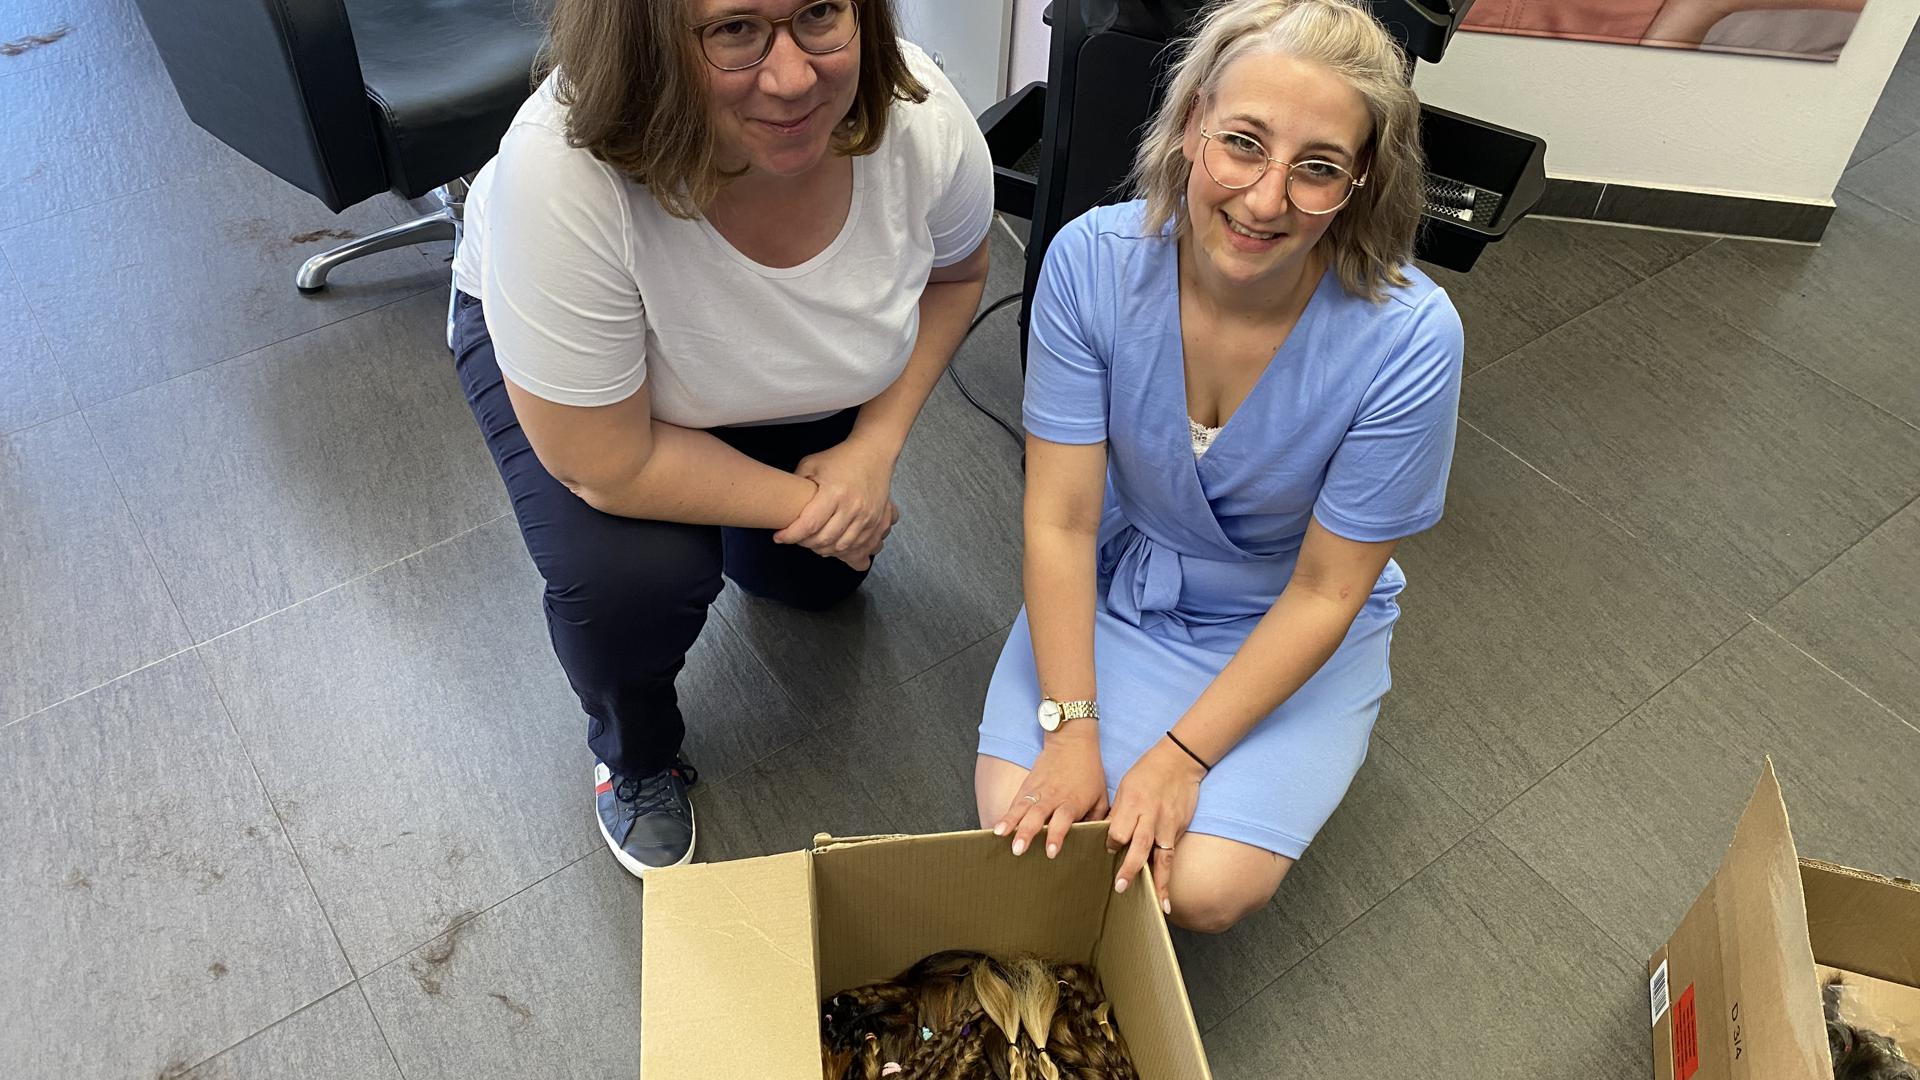 Anna-Lena Nowak und Daniela Schlor knien vor einem Karton. Darin liegen viele Zöpfe aus echtem Haar. Sie gehen als Spenden an Zweithaar-Spezialisten, die Echthaar-Perücken daraus fertigen.